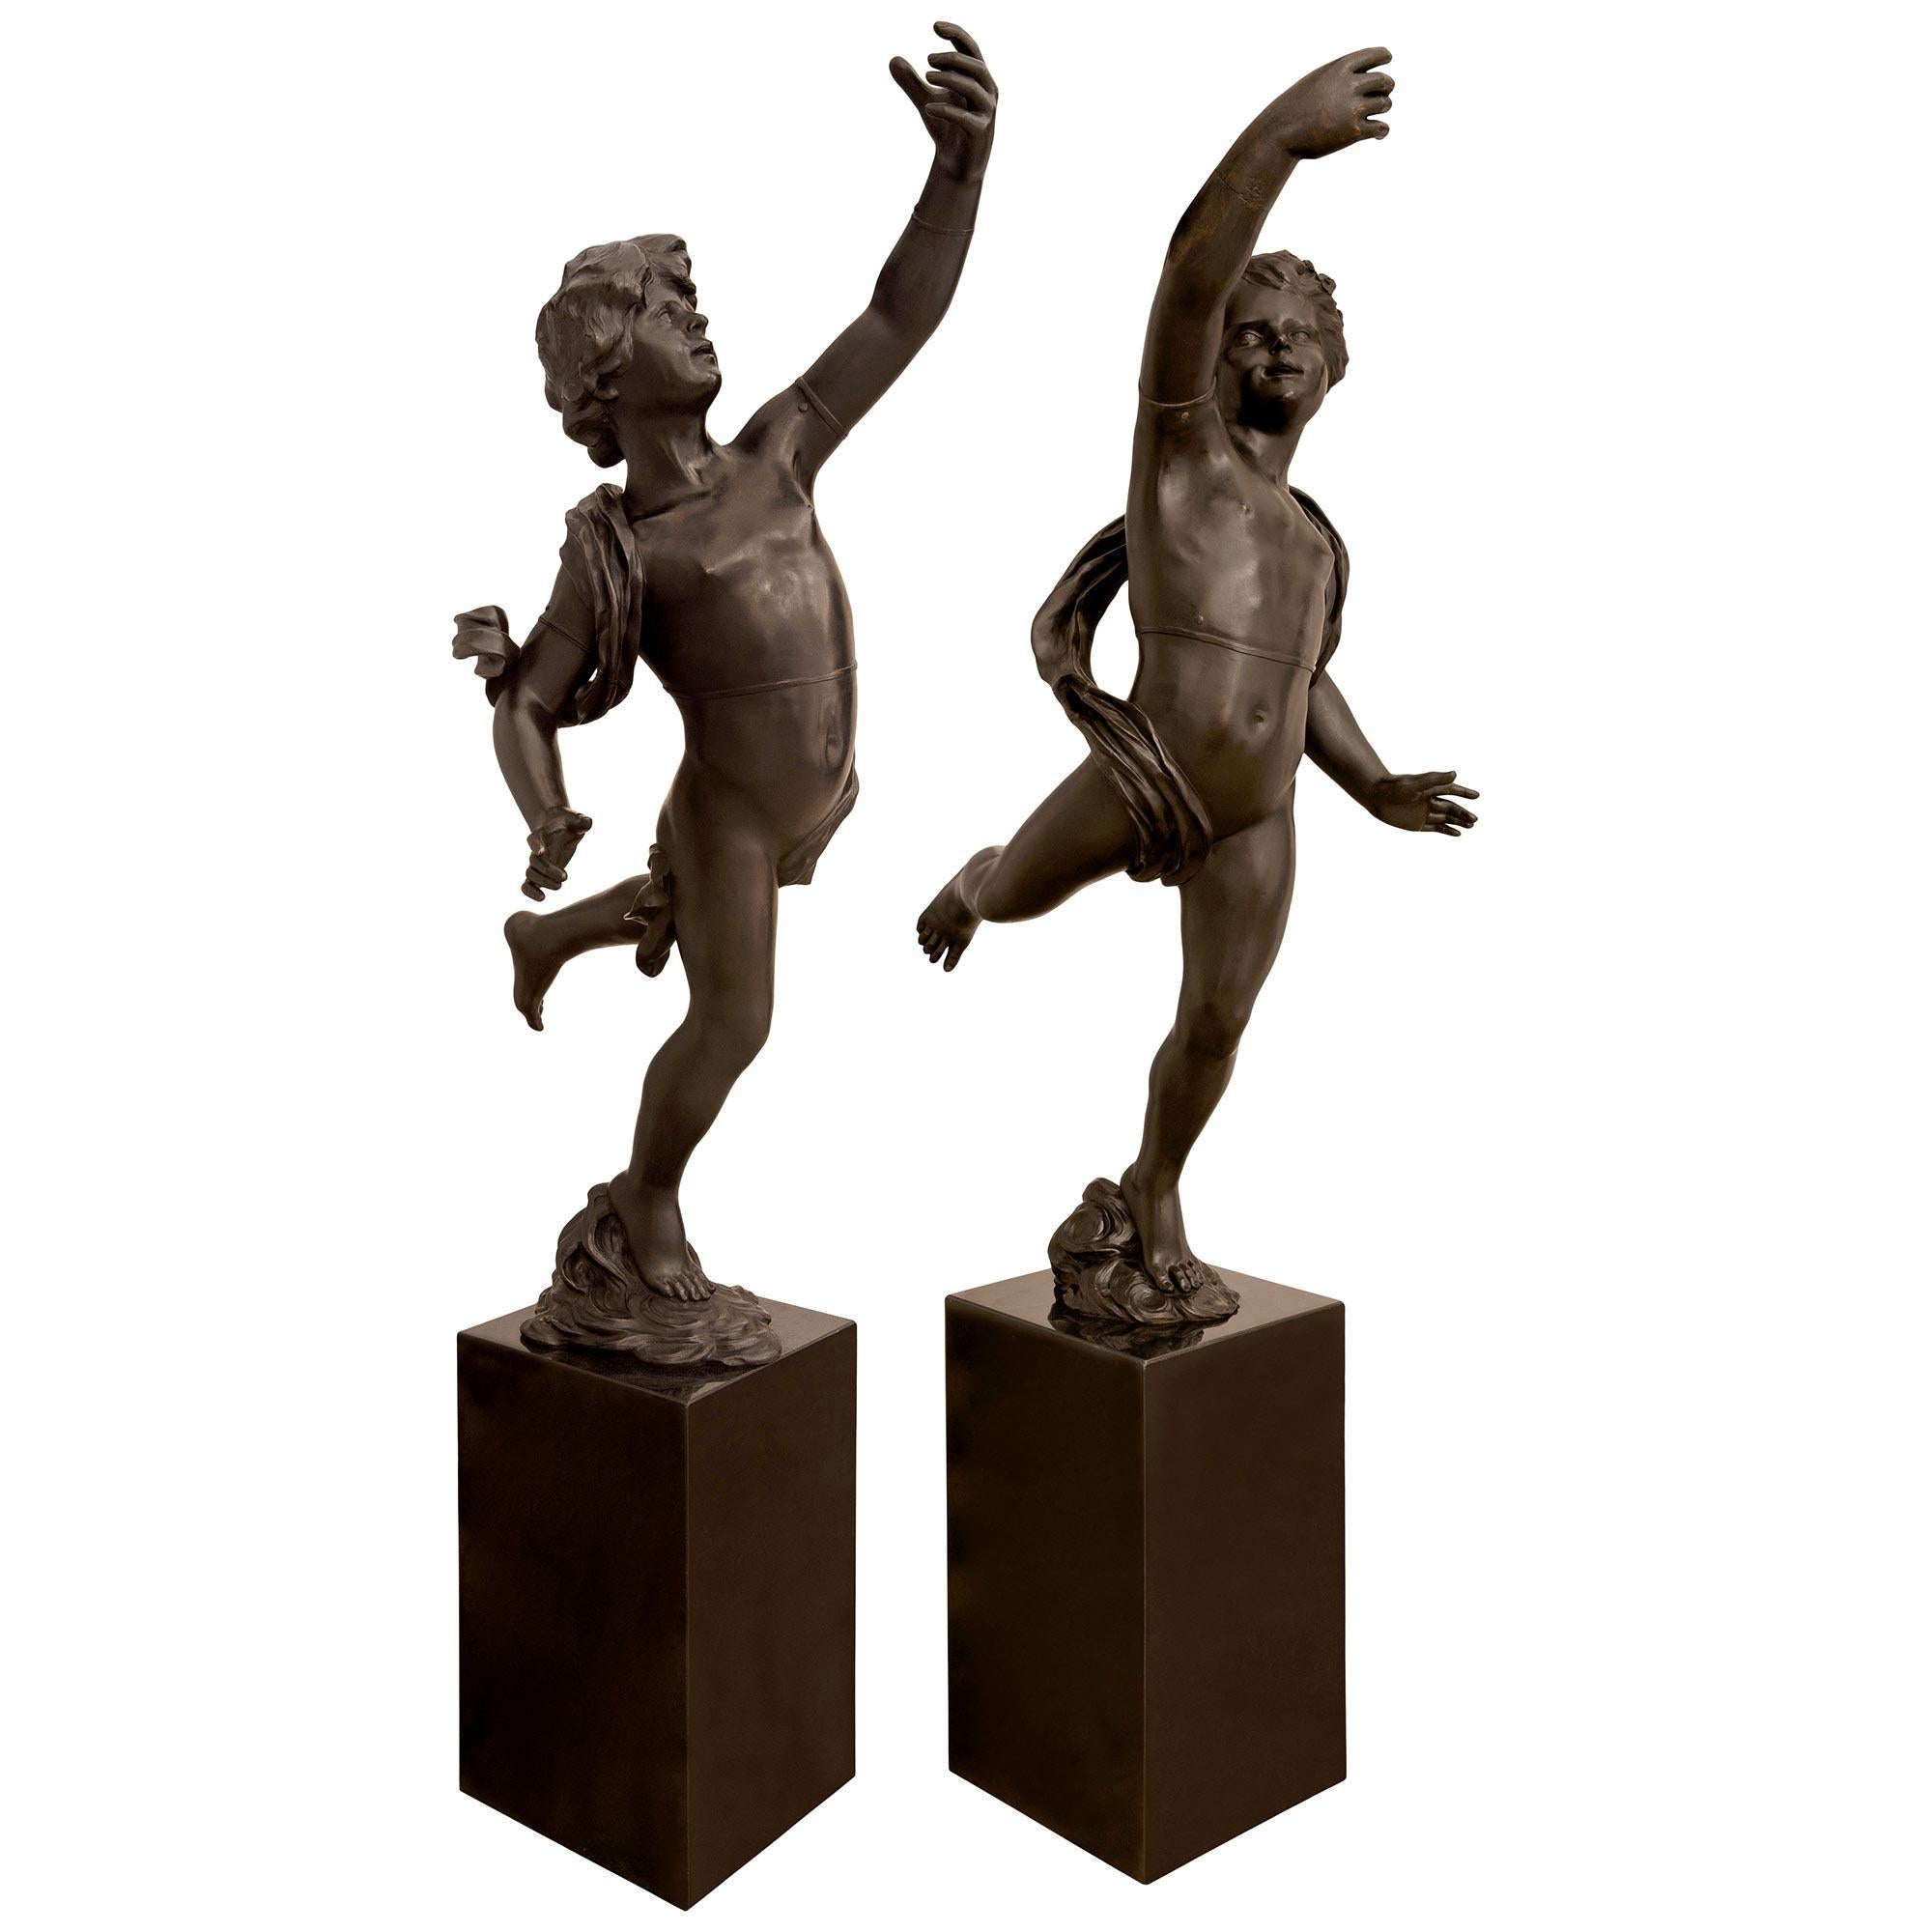 Une impressionnante et très grande paire de statues en bronze patiné néoclassique du XIXe siècle représentant des Putti dansantes. Cette paire de statues très décoratives est montée sur des bases rectangulaires carrées en granit noir aux bords